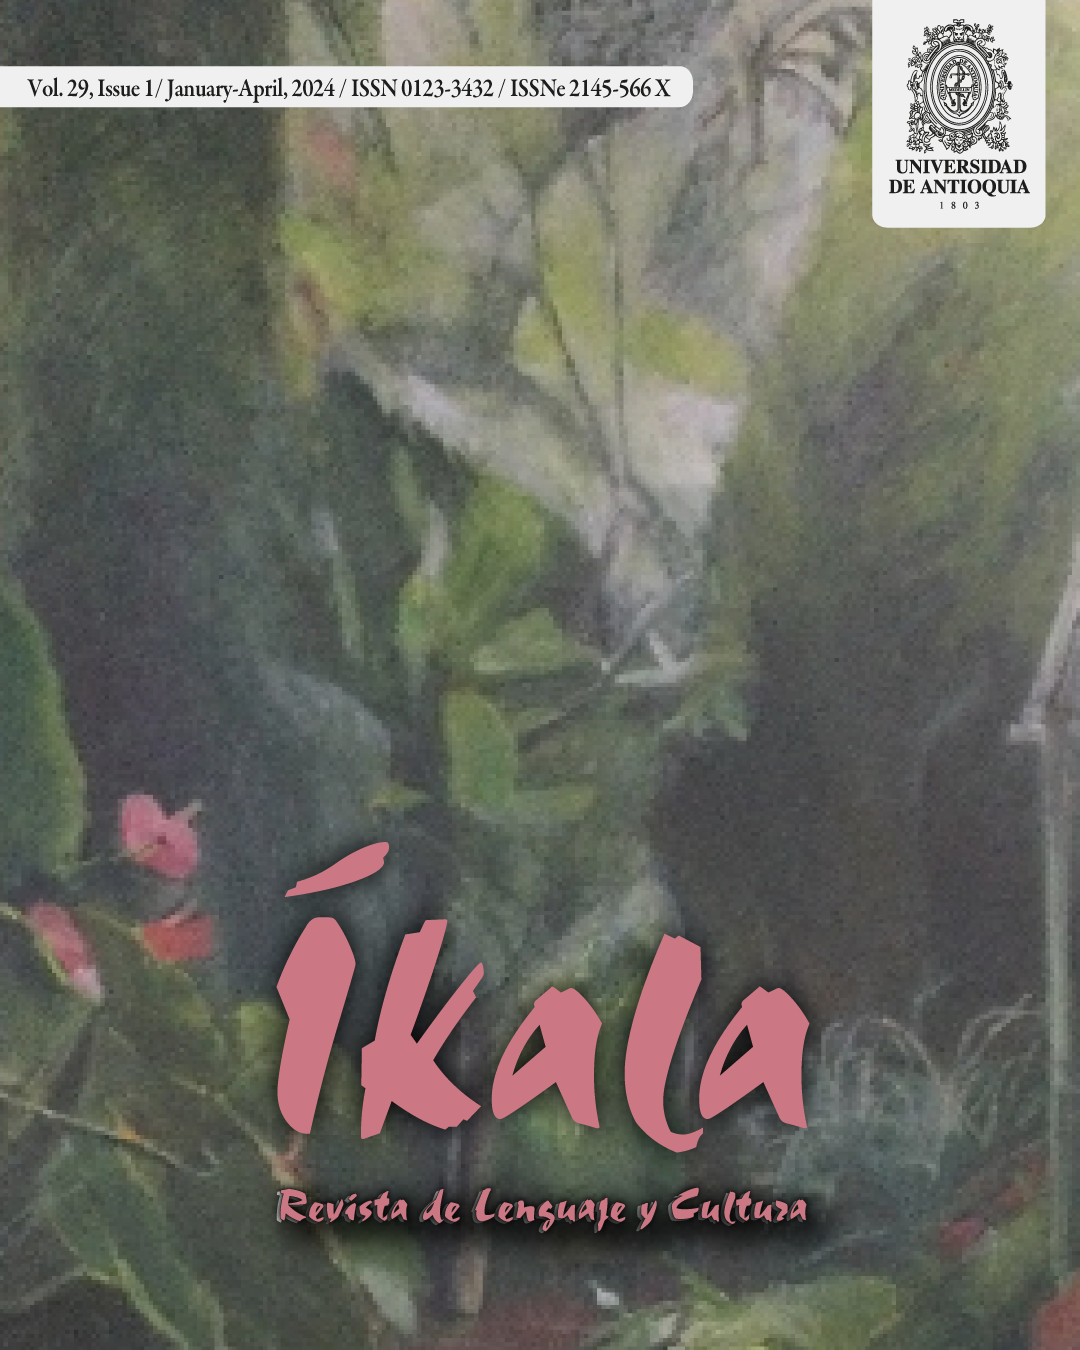 Portada de la publicación del volumen 29 de 2024 de la Revista Íkala.